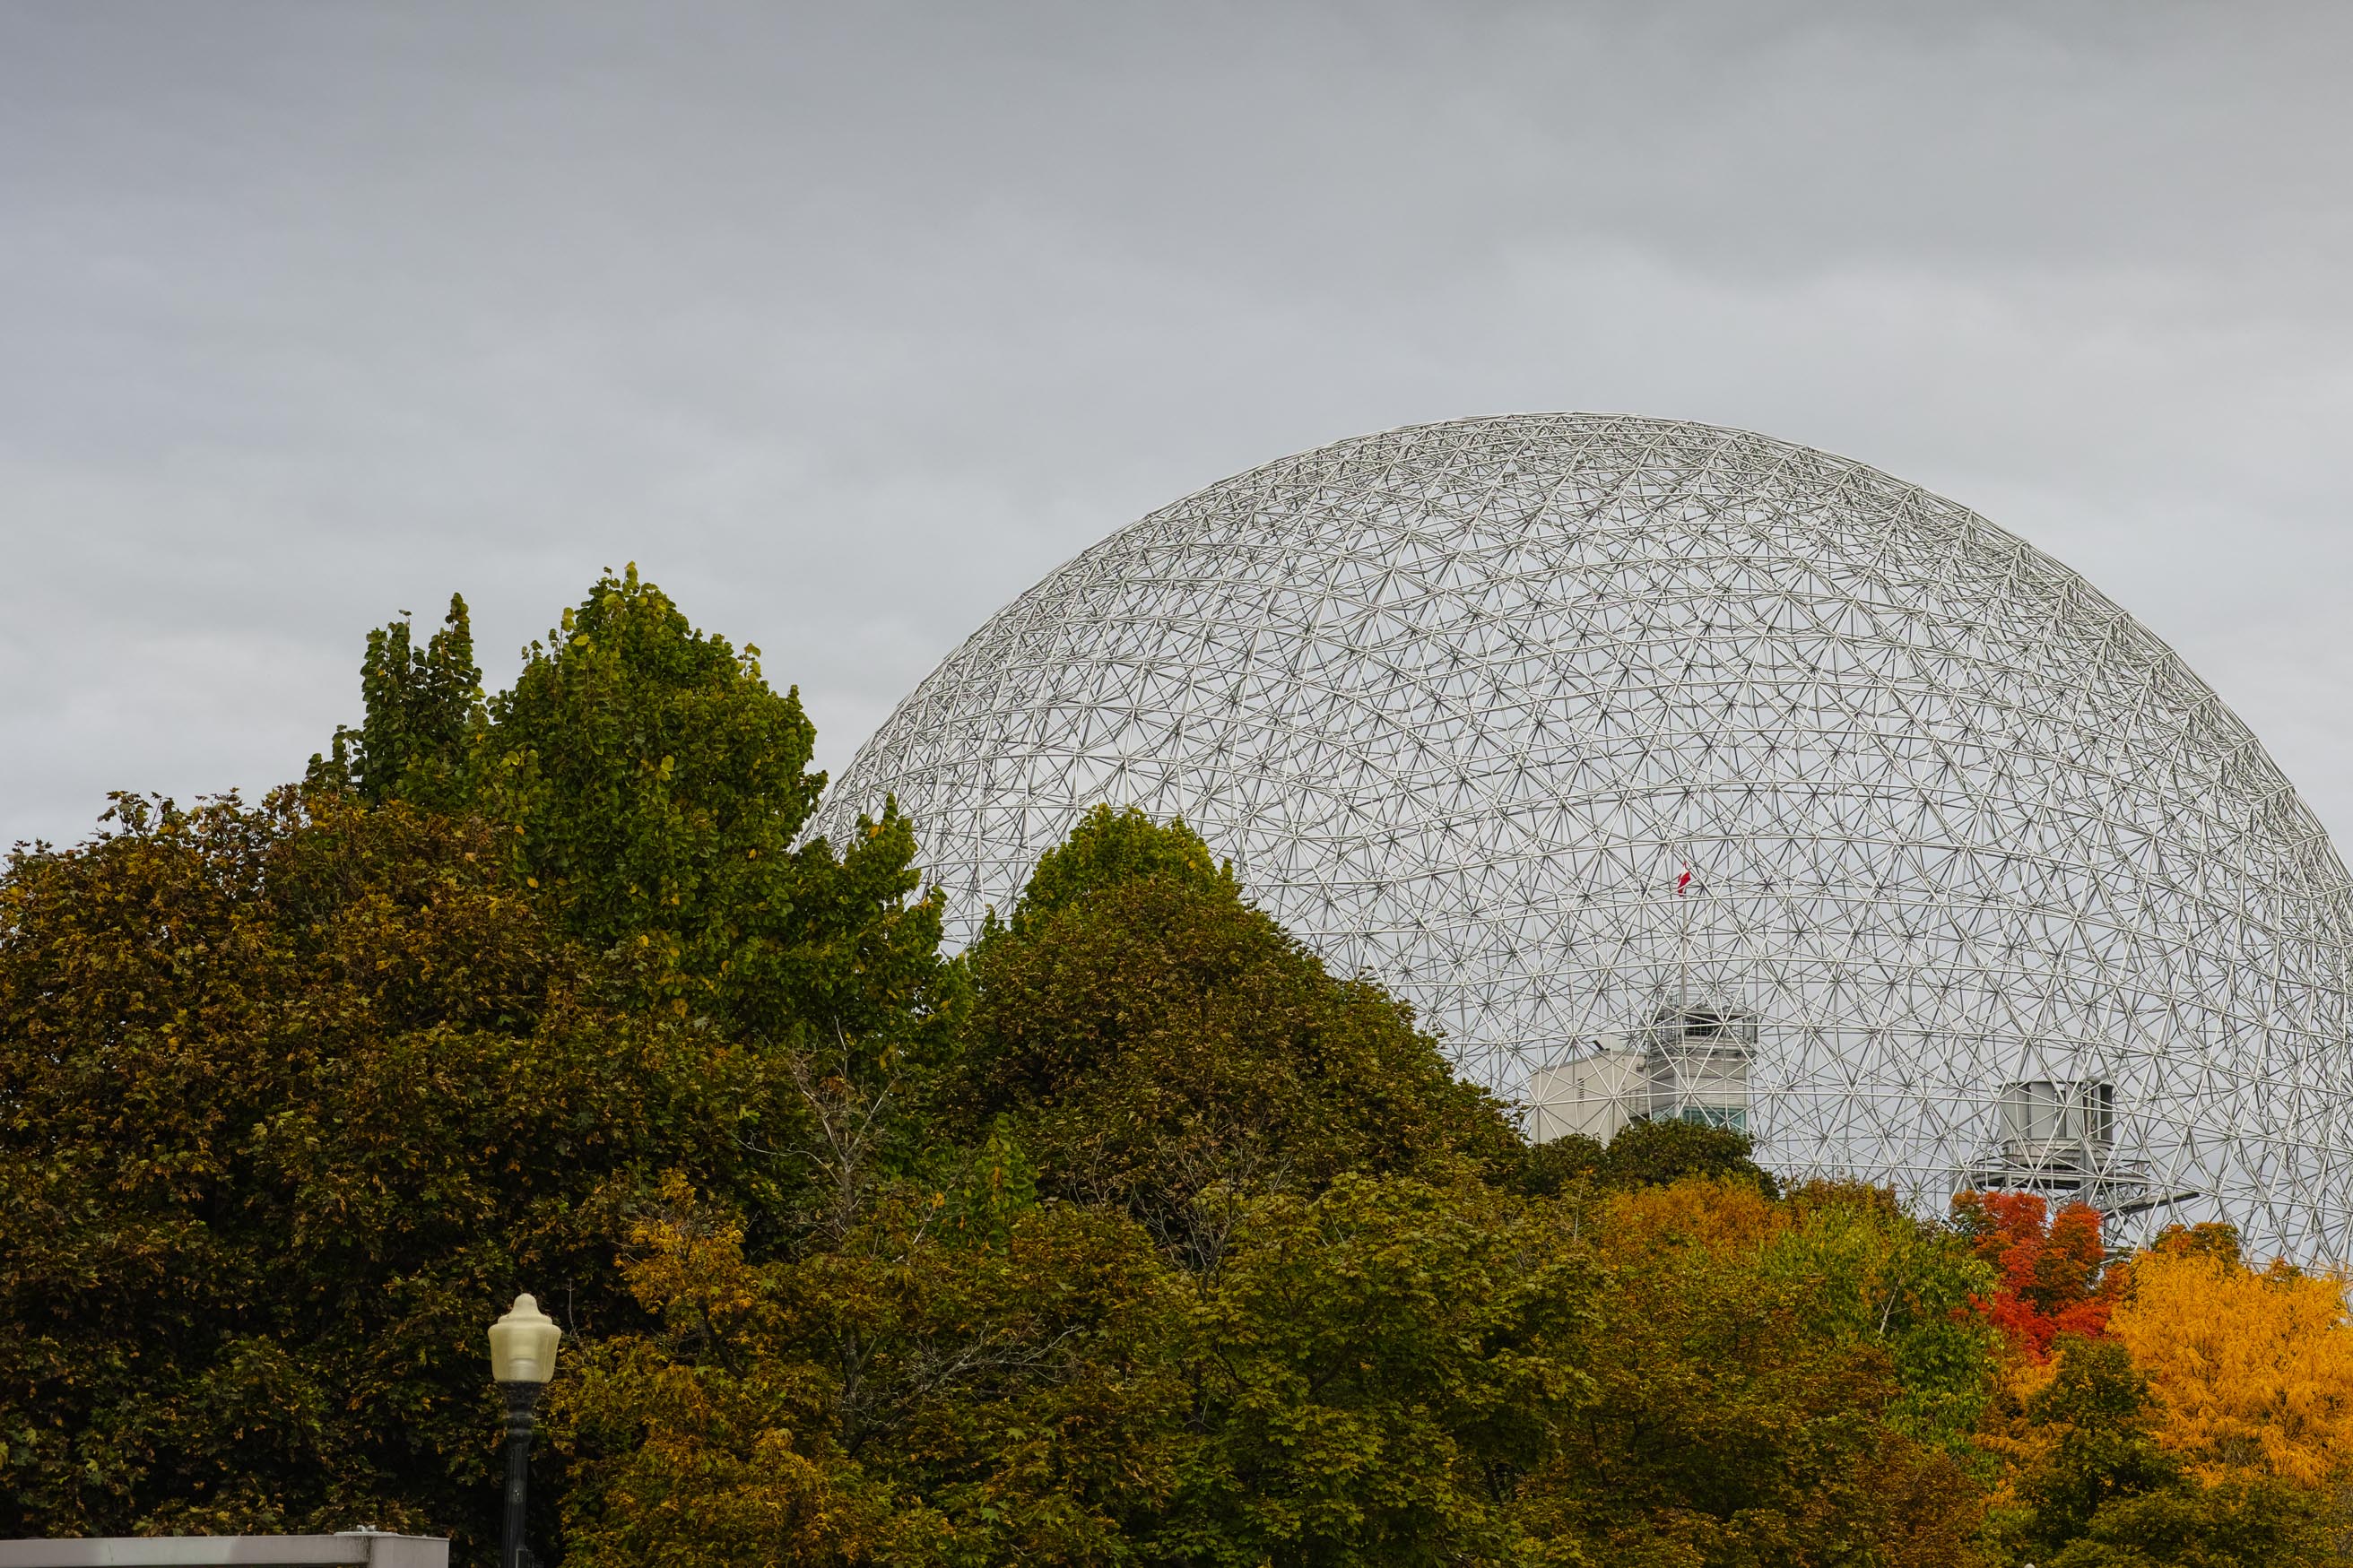 Le dôme géodésique se trouve dans le parc Jean-Drapeau sur l'île Sainte-Hélène et est visible de loin en raison de sa hauteur de 62 mètres. 